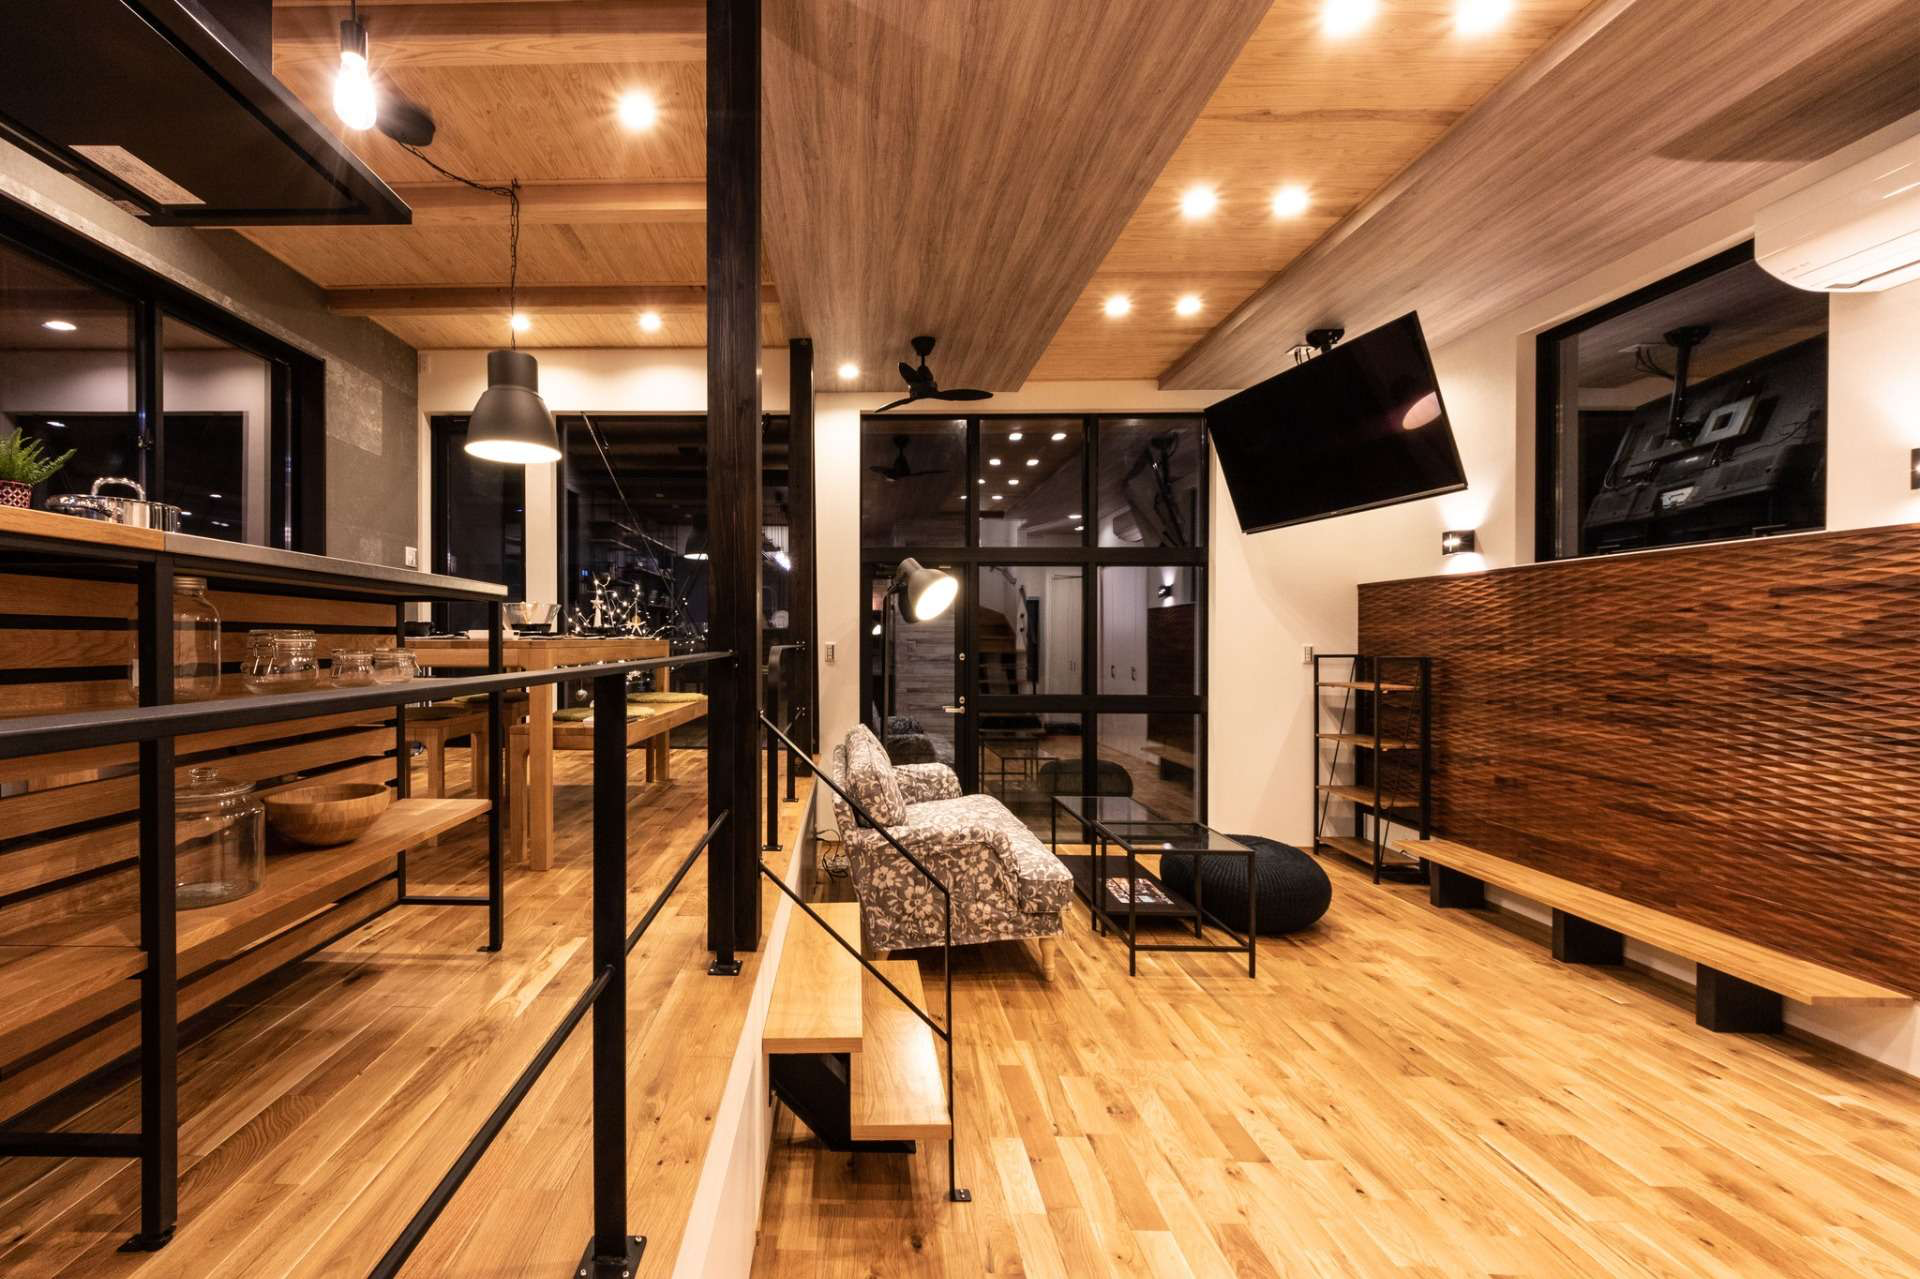 【住まいの印象を変える黒アイアン】宮崎市で新築・リノベーション | mikiデザインハウス